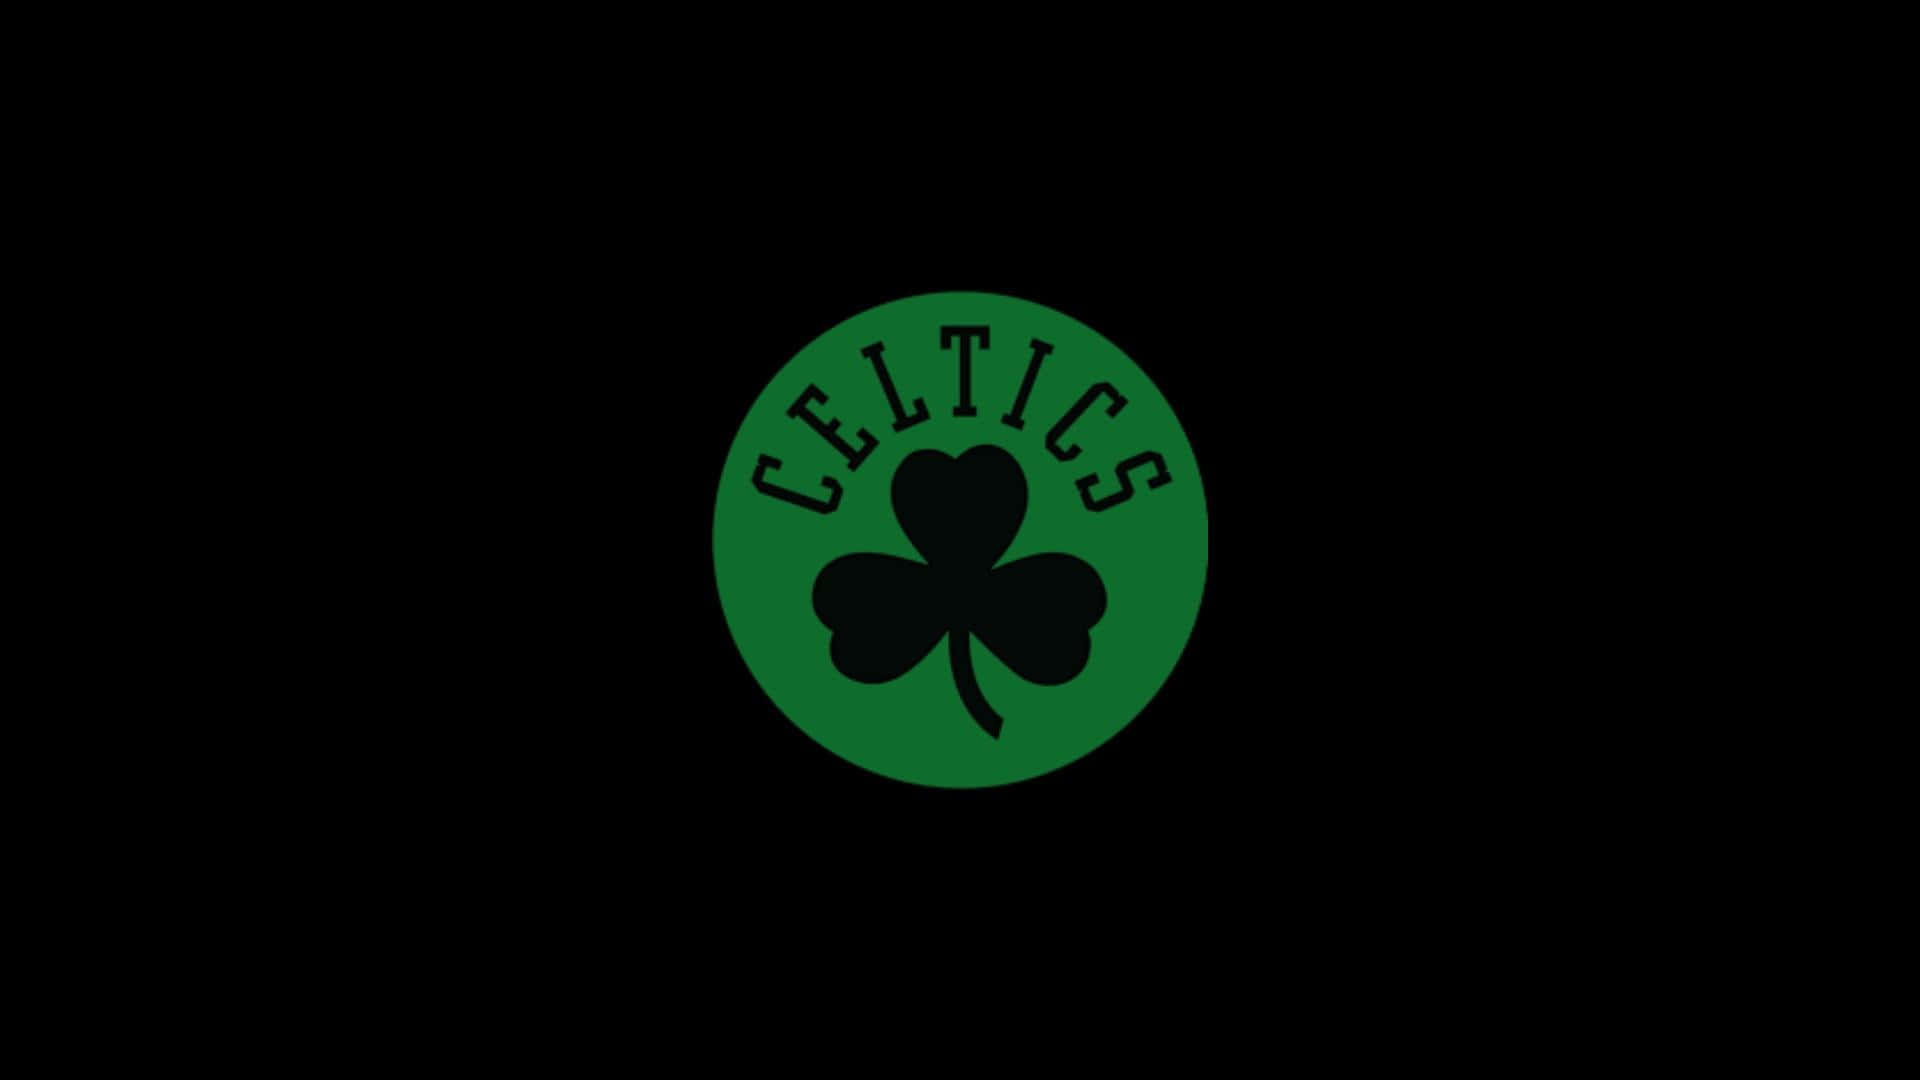 Classic Celtics Logo Wallpaper